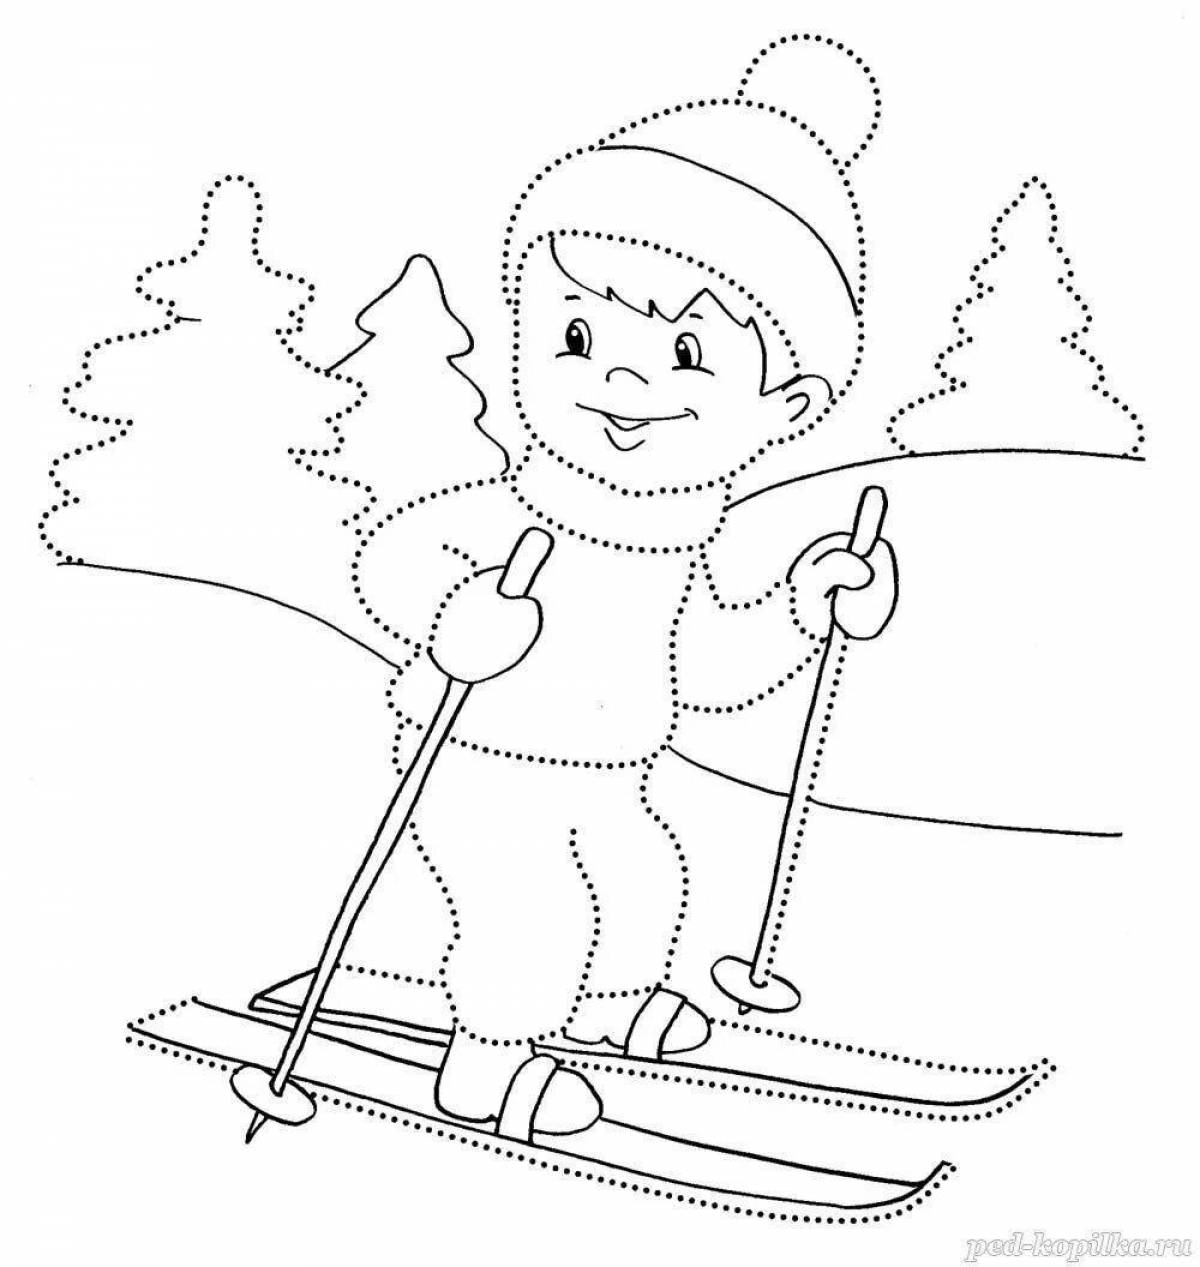 Раскраска авантюрный лыжник для детей 6-7 лет